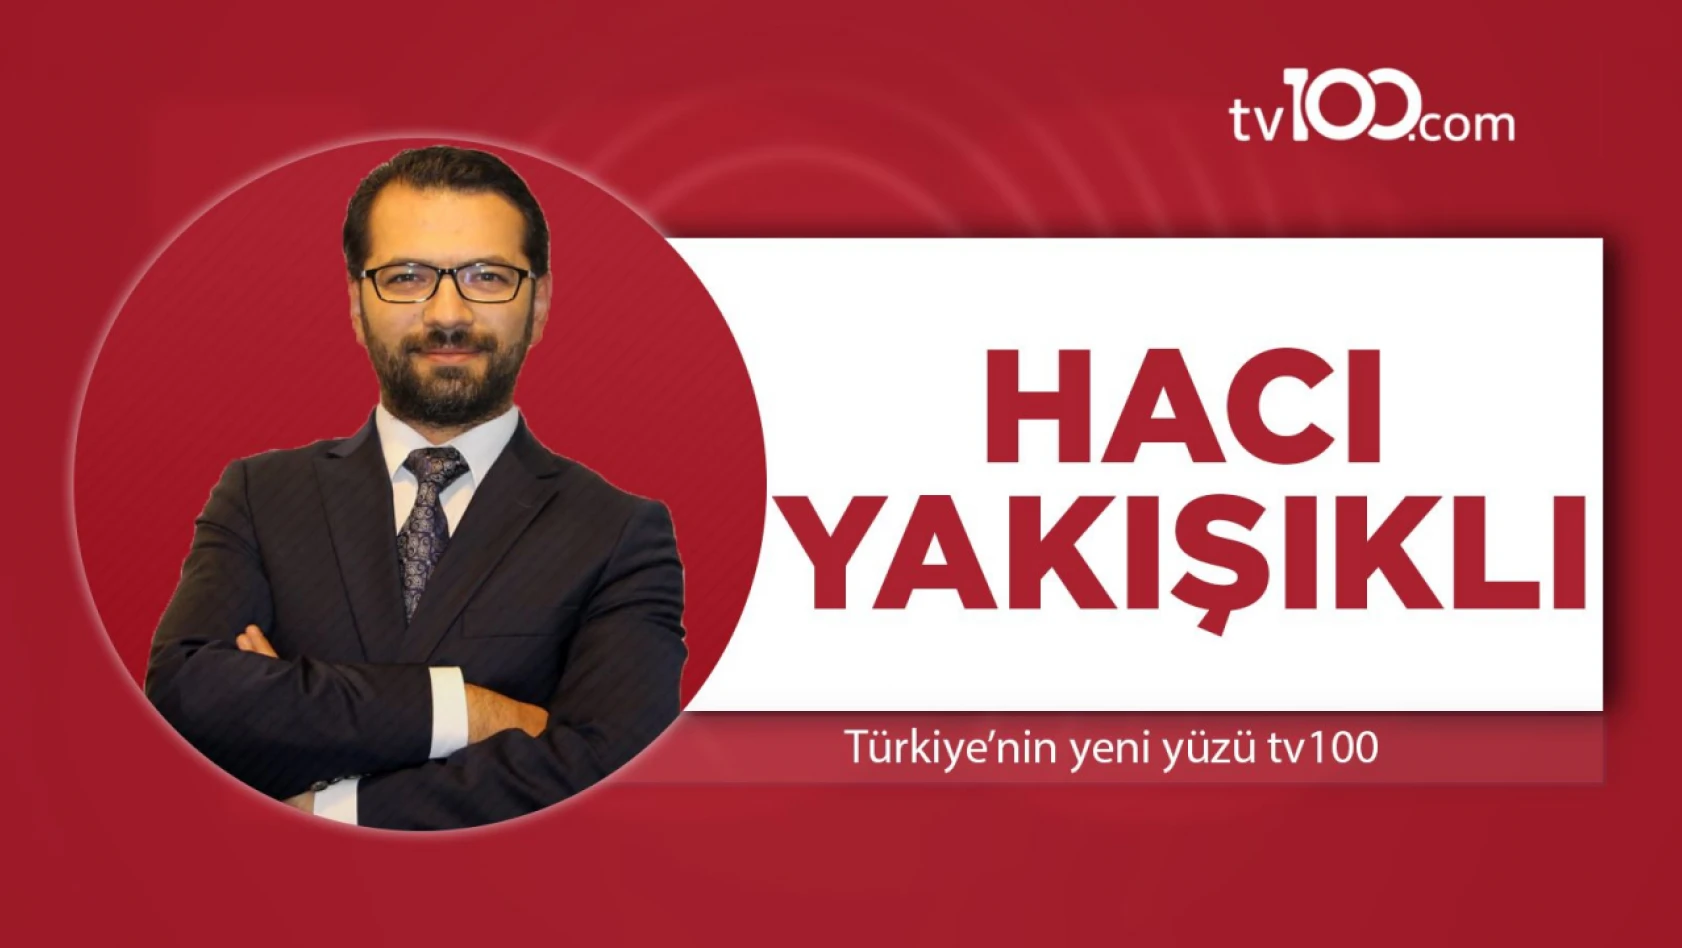 Ünlü gazeteci Hacı Yakışıklı, tepki gösterdi: Sporseverler uyuyor mu?